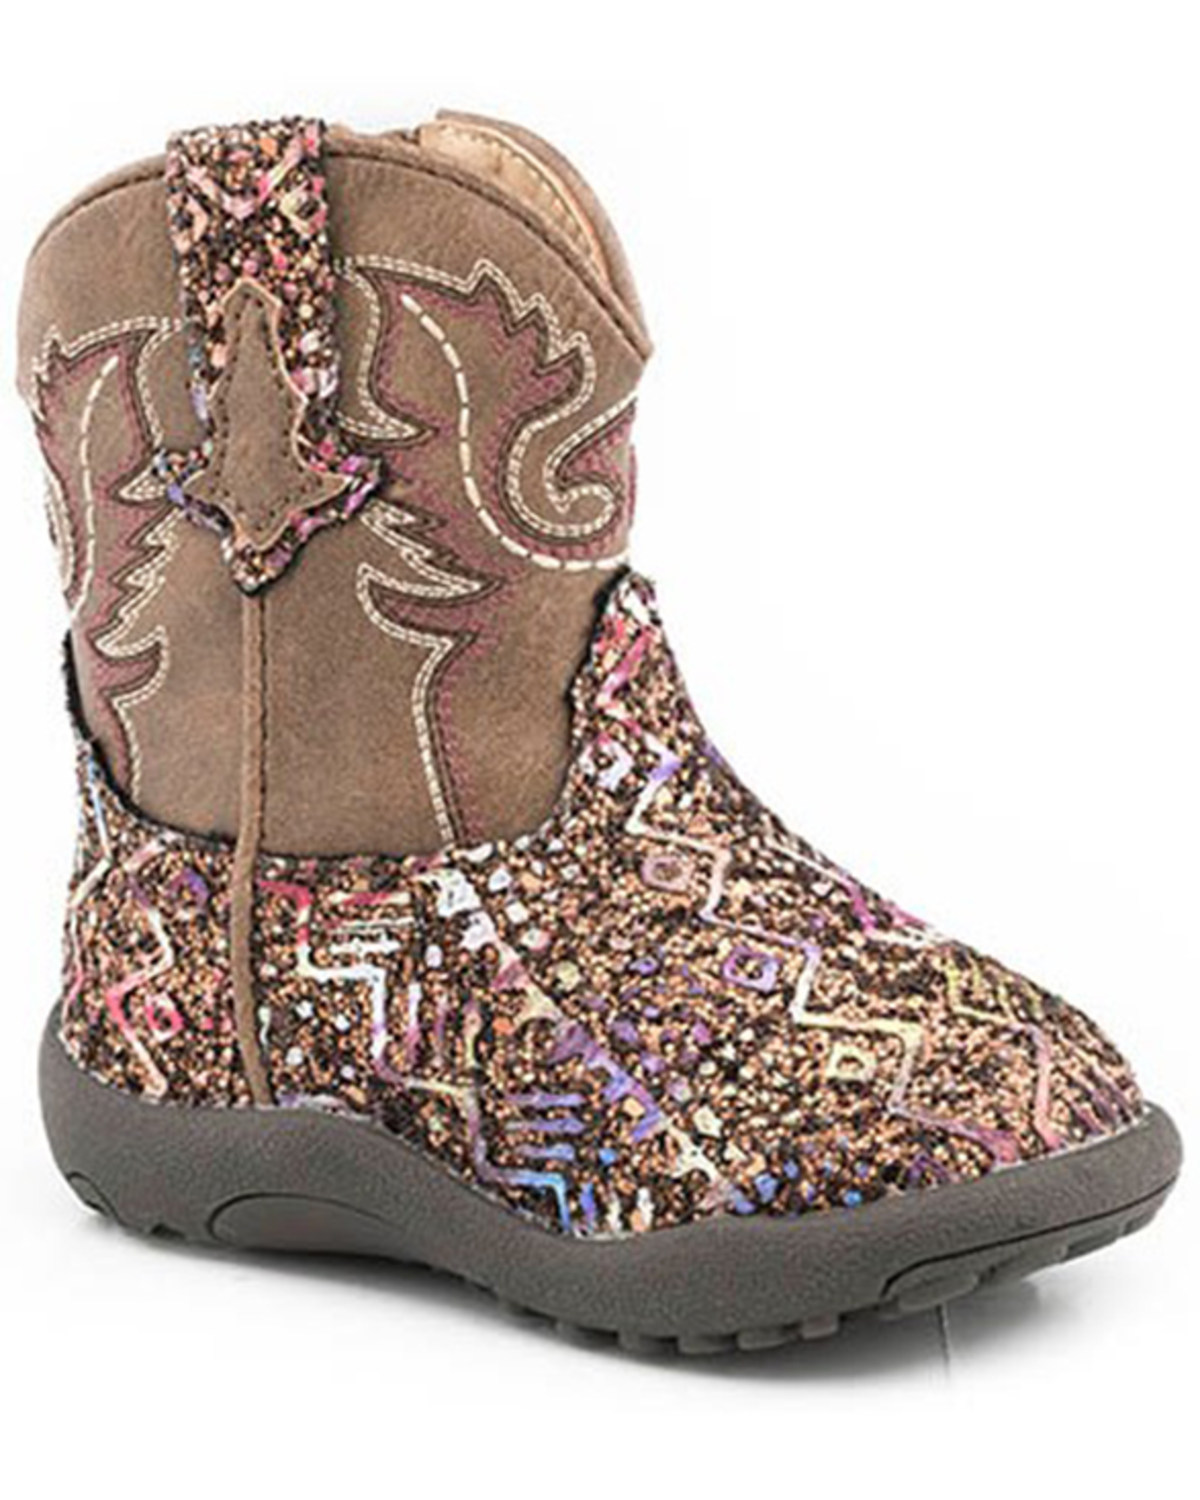 Roper Infant Girls' Glitter Southwestern Boots - Square Toe